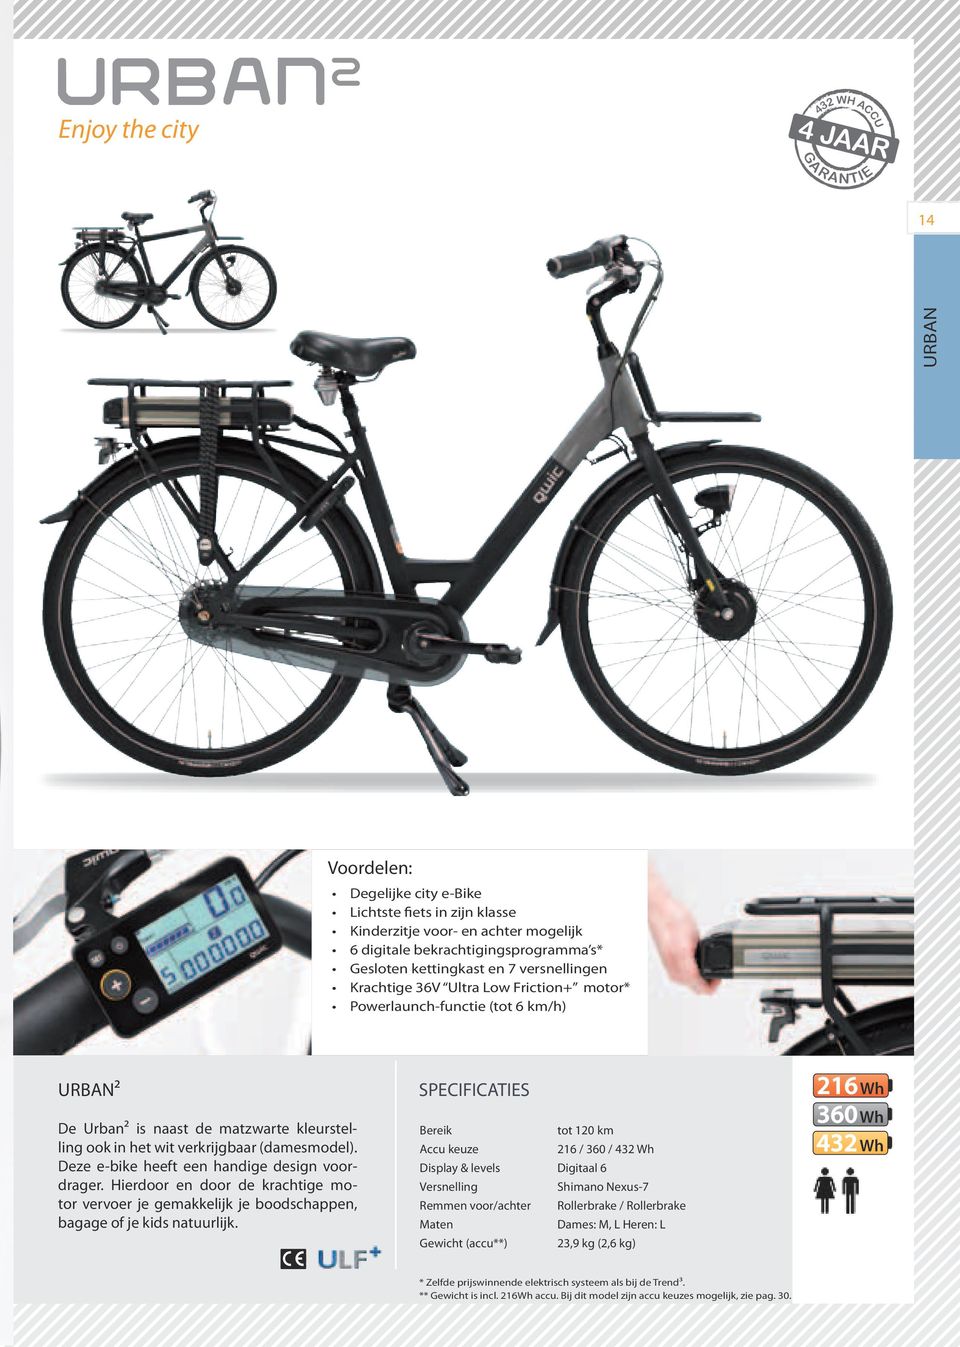 Voordelen: Degelijke city e-bike Lichtste fiets in zijn klasse Kinderzitje voor- en achter mogelijk 6 digitale bekrachtigingsprogramma s* Gesloten kettingkast en 7 versnellingen Krachtige 36V Ultra